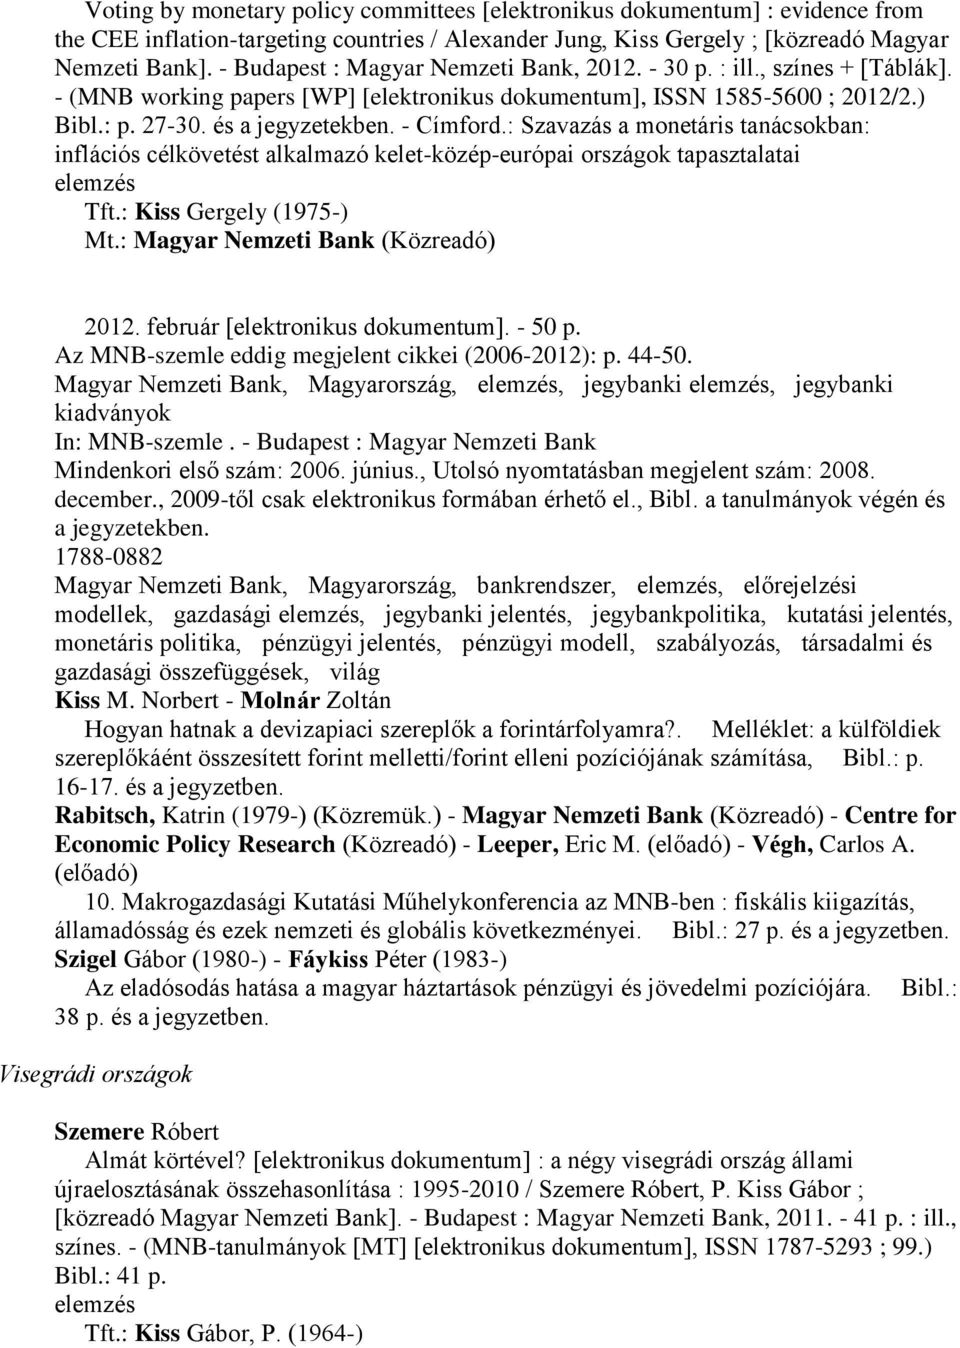 - Címford.: Szavazás a monetáris tanácsokban: inflációs célkövetést alkalmazó kelet-közép-európai országok tapasztalatai Tft.: Kiss Gergely (1975-) Mt.: Magyar Nemzeti Bank (Közreadó) 2012.